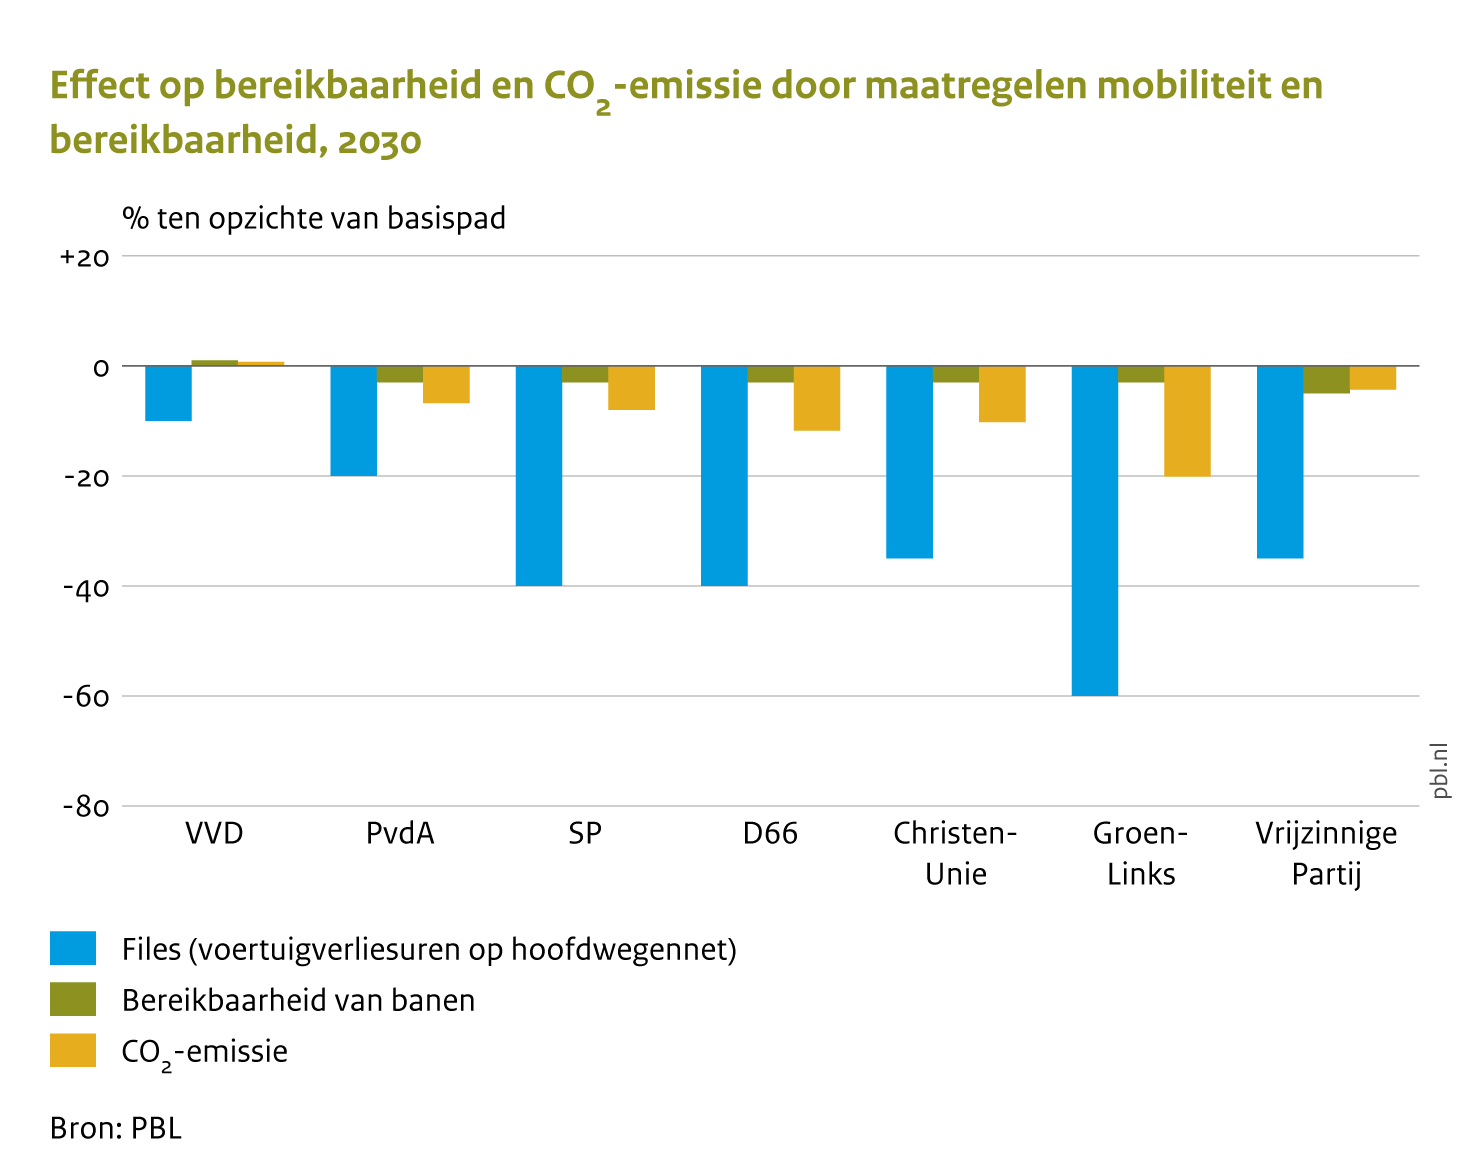 Effect op bereikbaarheid en CO2-emissie door maatregelen mobiliteit en bereikbaarheid, 2030